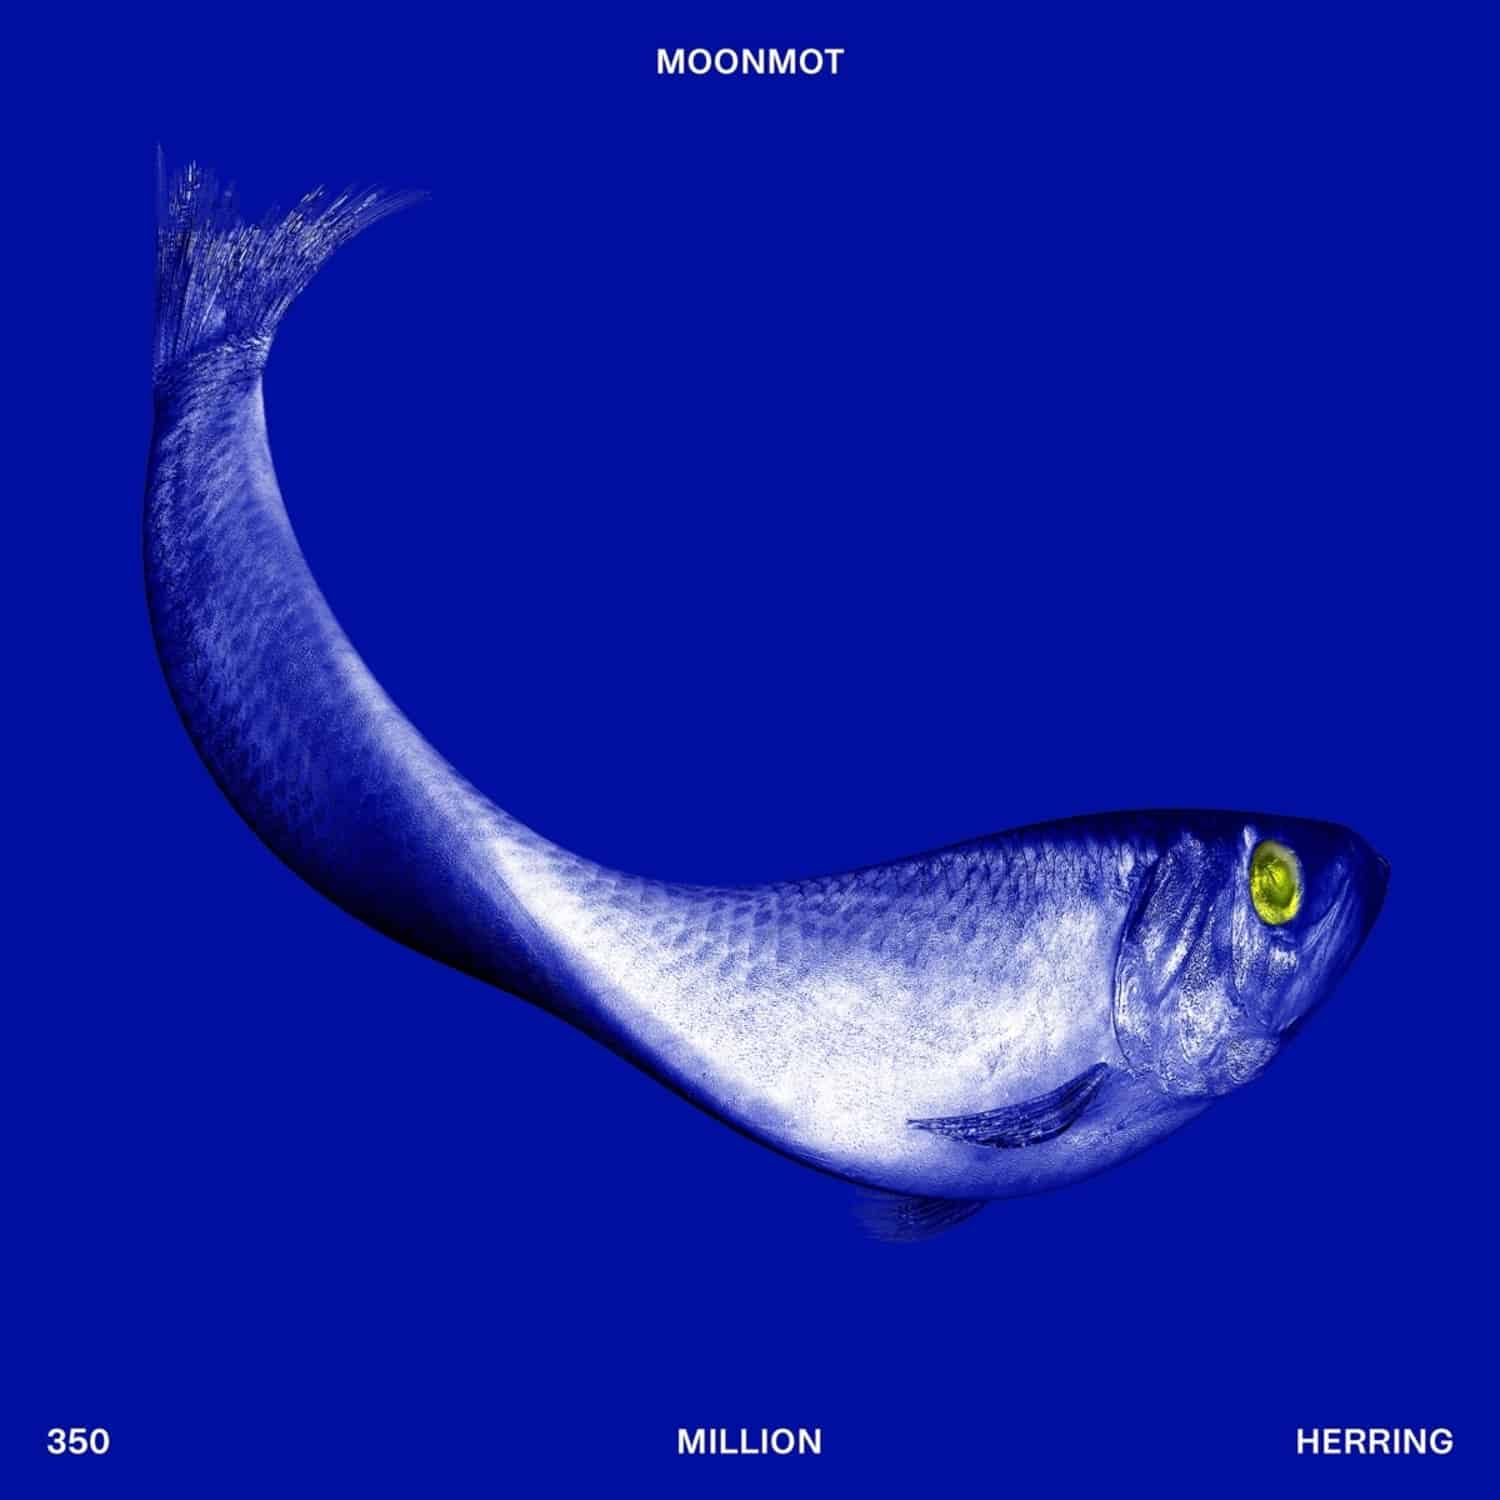 Moonmot - 350 MILLION HERRING 